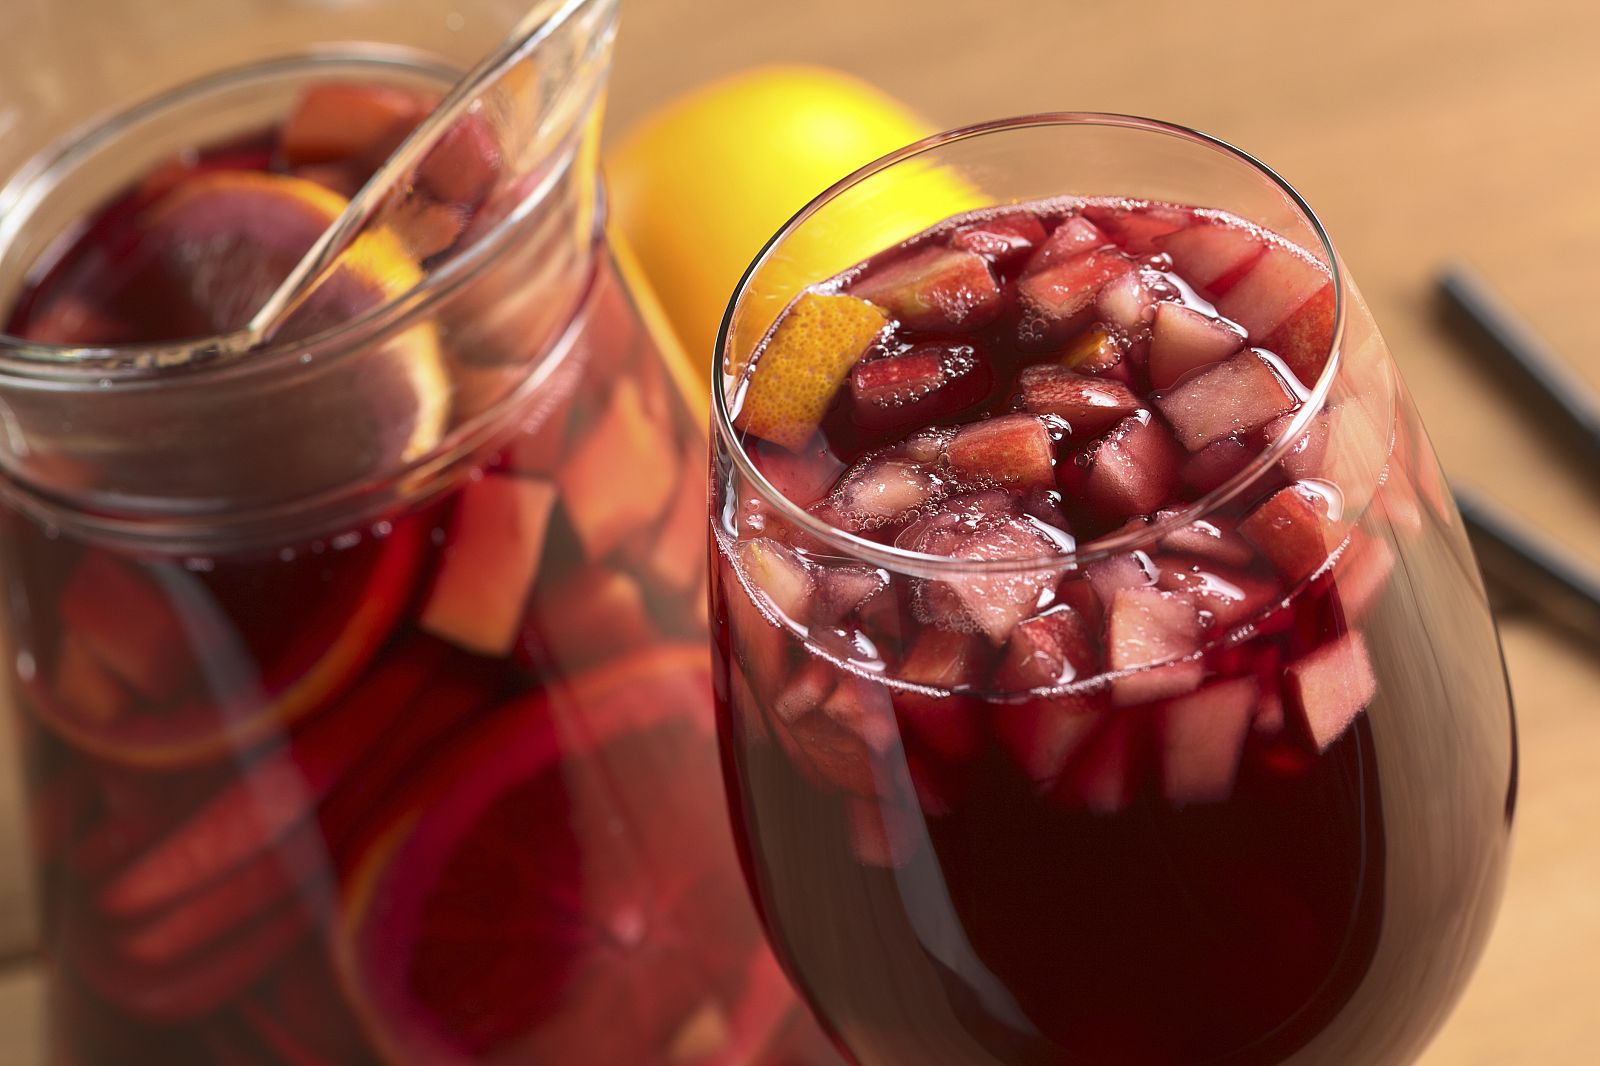 La denominación "sangría" solo se podrá usar para identificar la bebida producida en España y Portugal